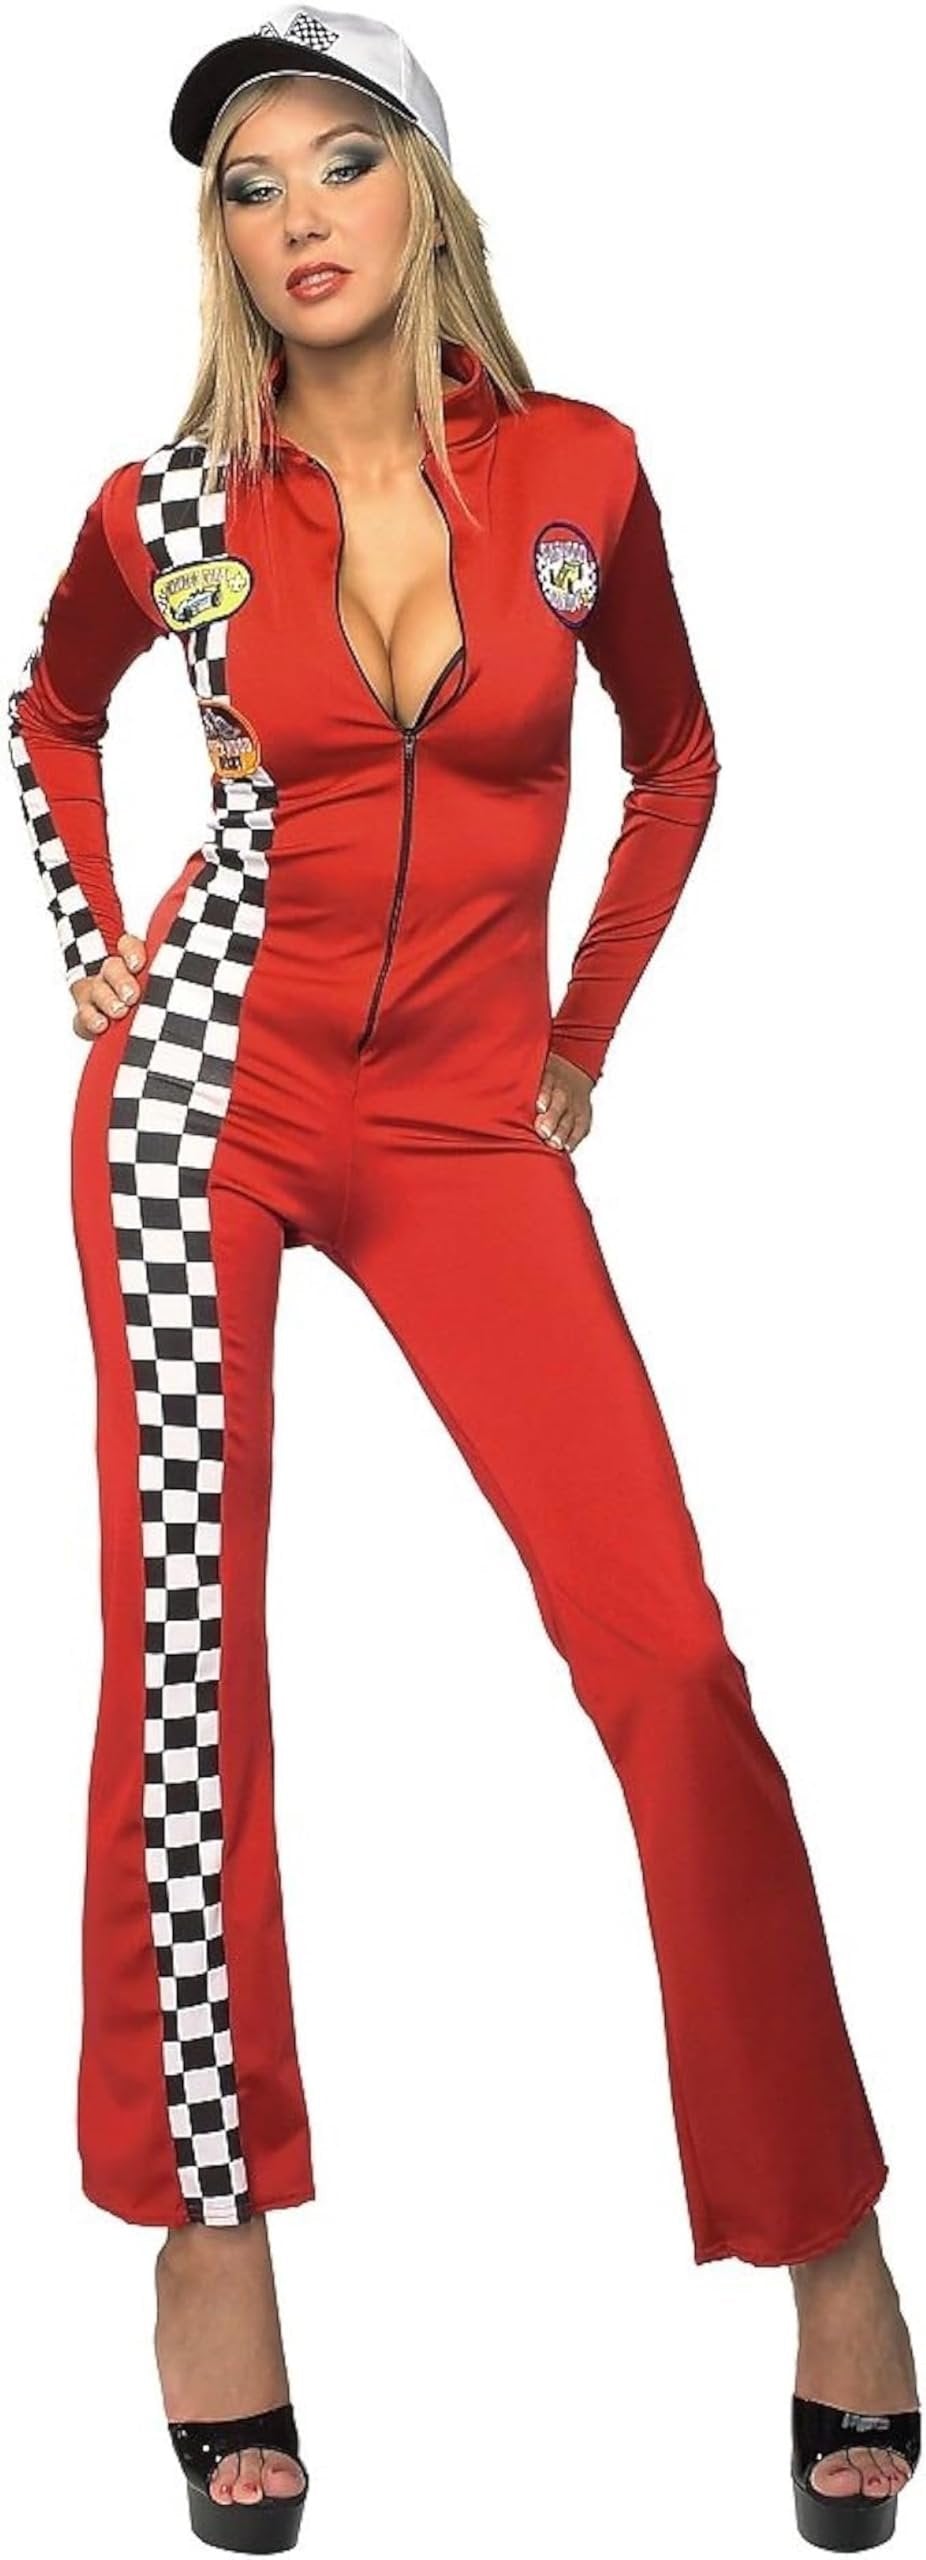 Secret Wishes Women's Red Racer Adult Romper Costume, Multicolor, Medium